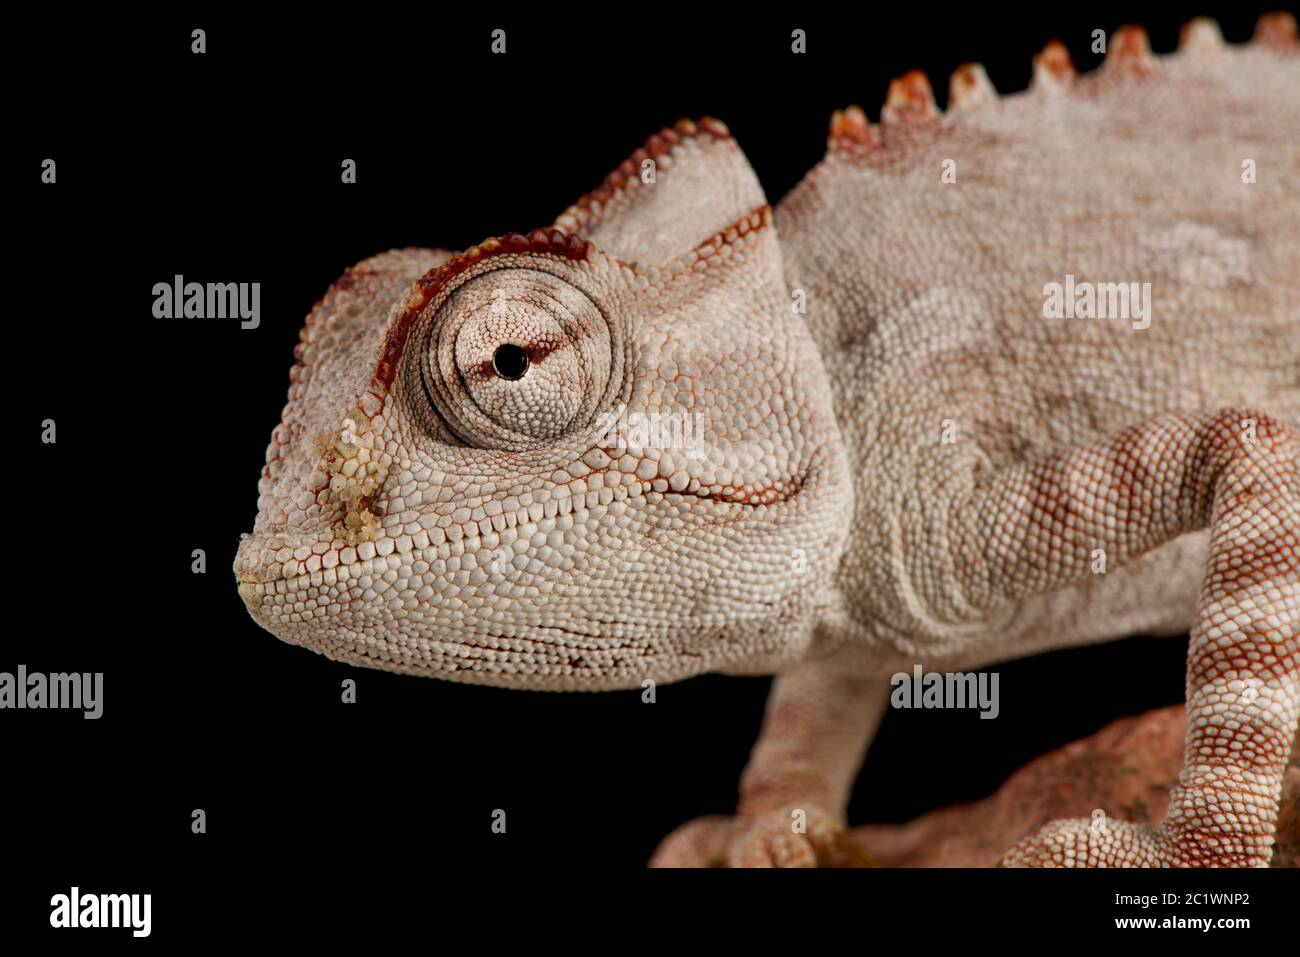 Namaqua chameleon (Chameleon namaquensis) Stock Photo